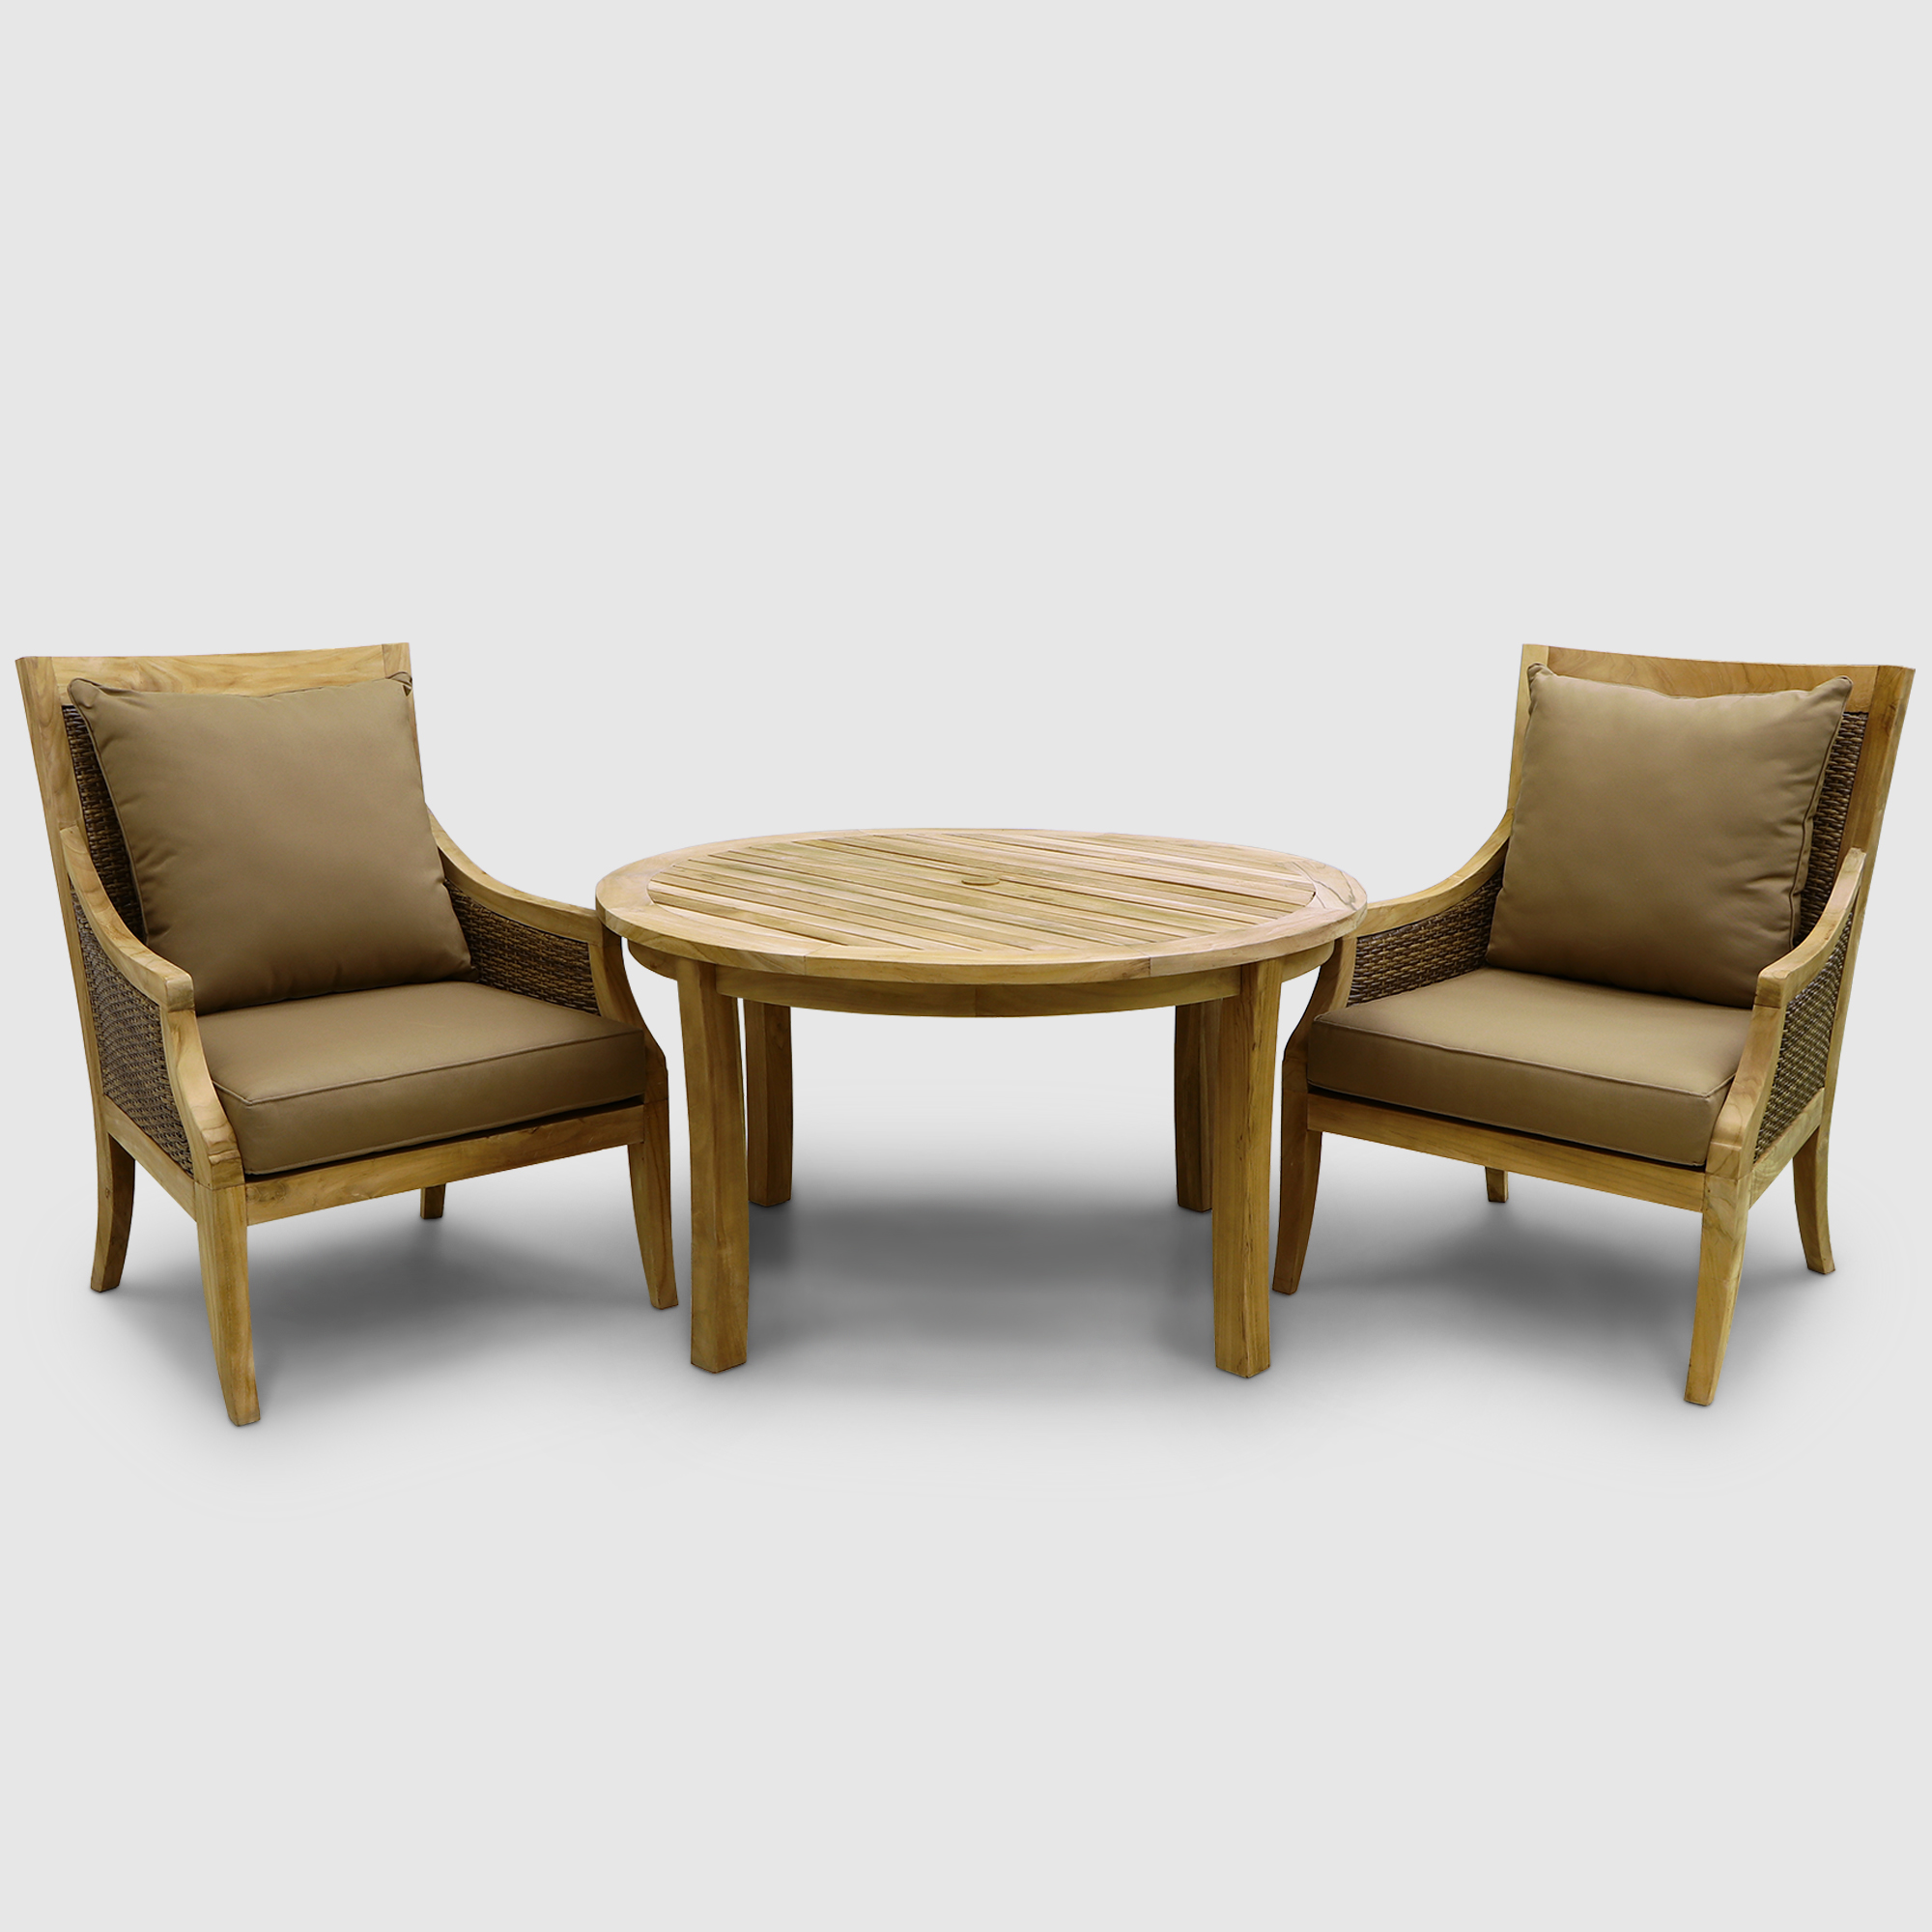 Комплект мебели Jepara oslo 3 предмета, цвет натуральный, размер 77х83х100 см - фото 1